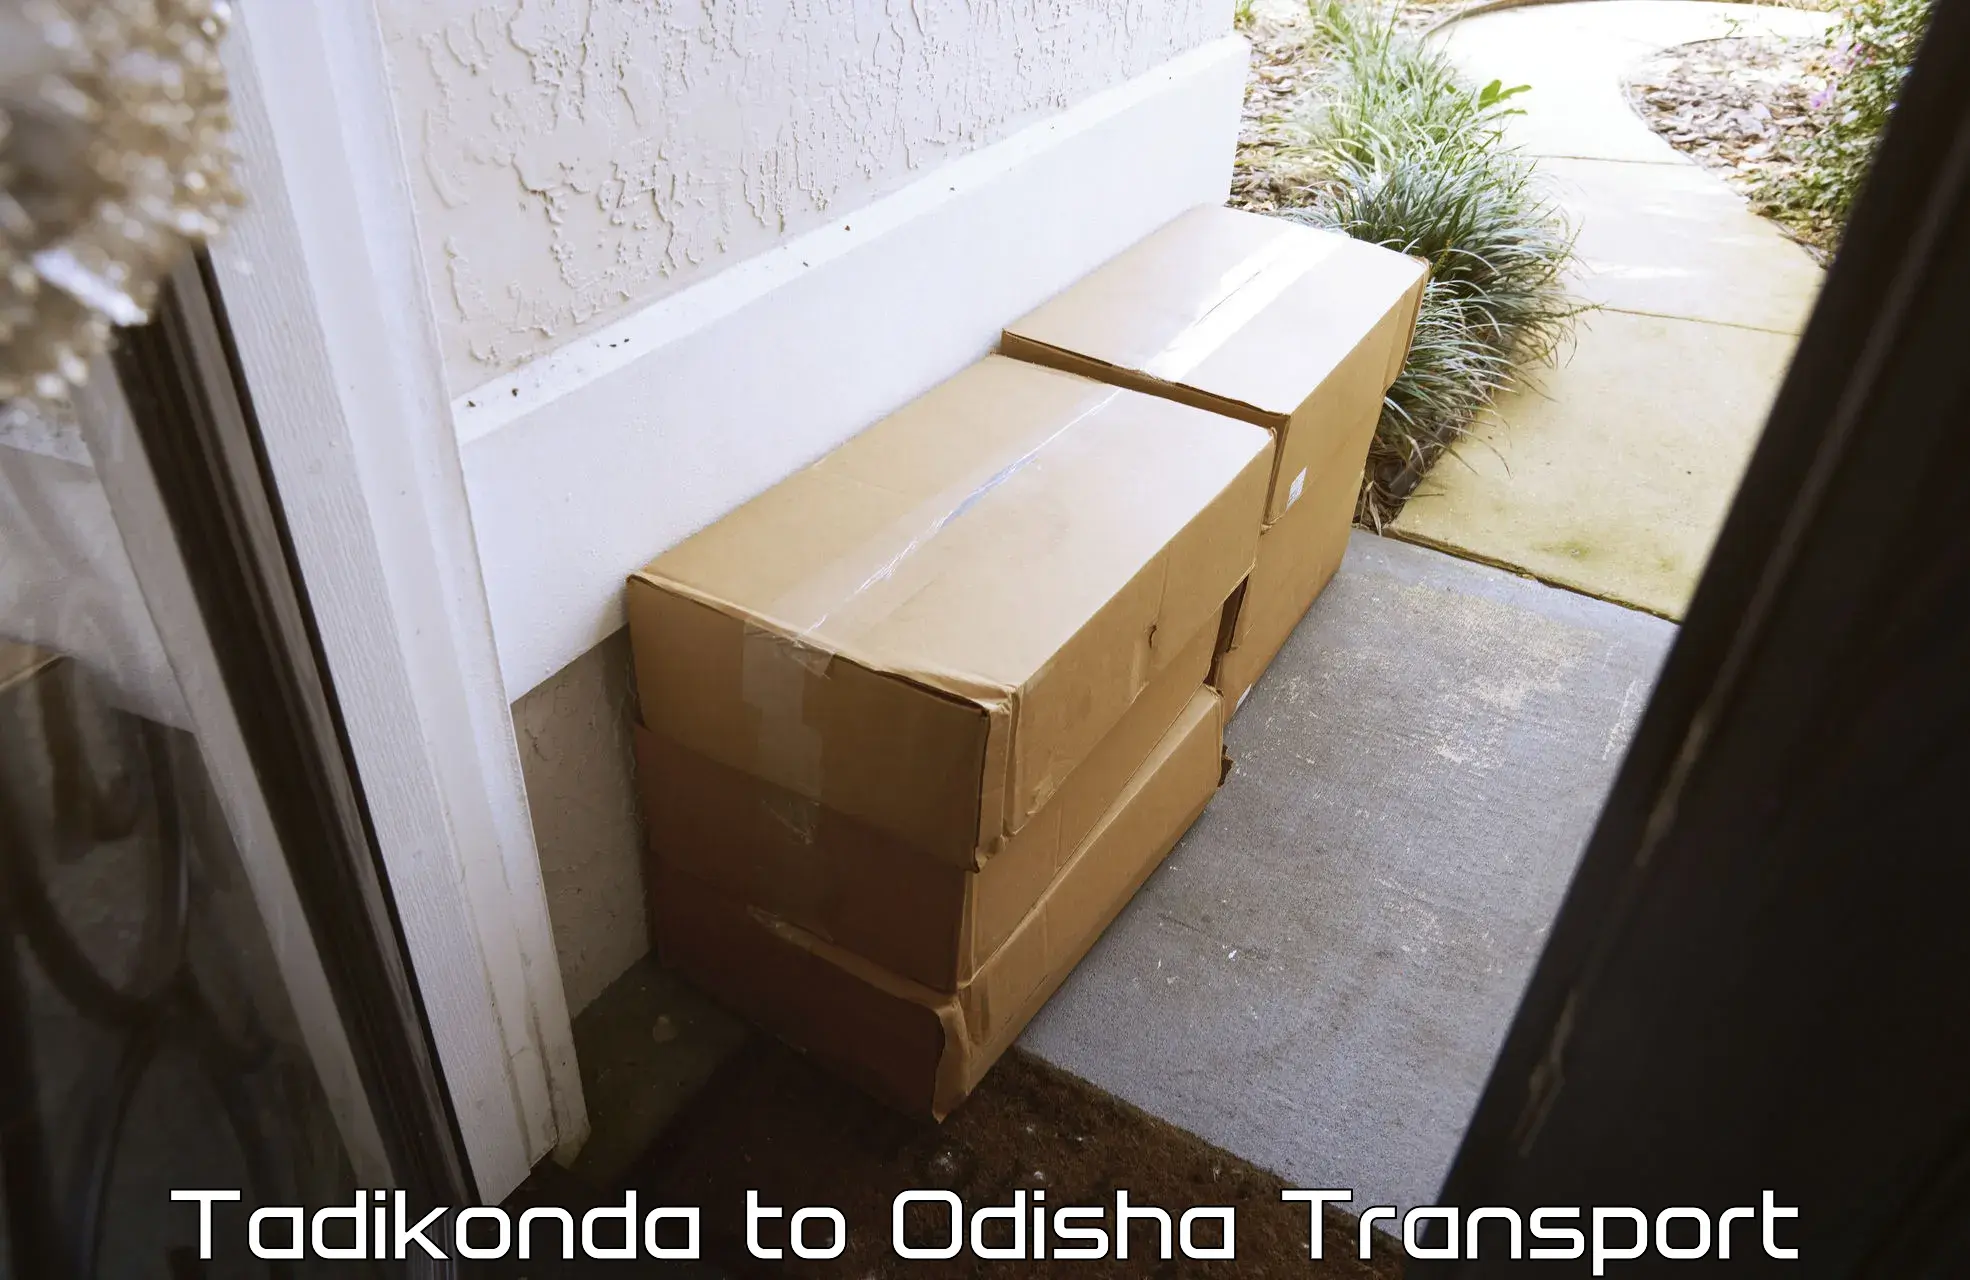 Furniture transport service Tadikonda to Kantamal